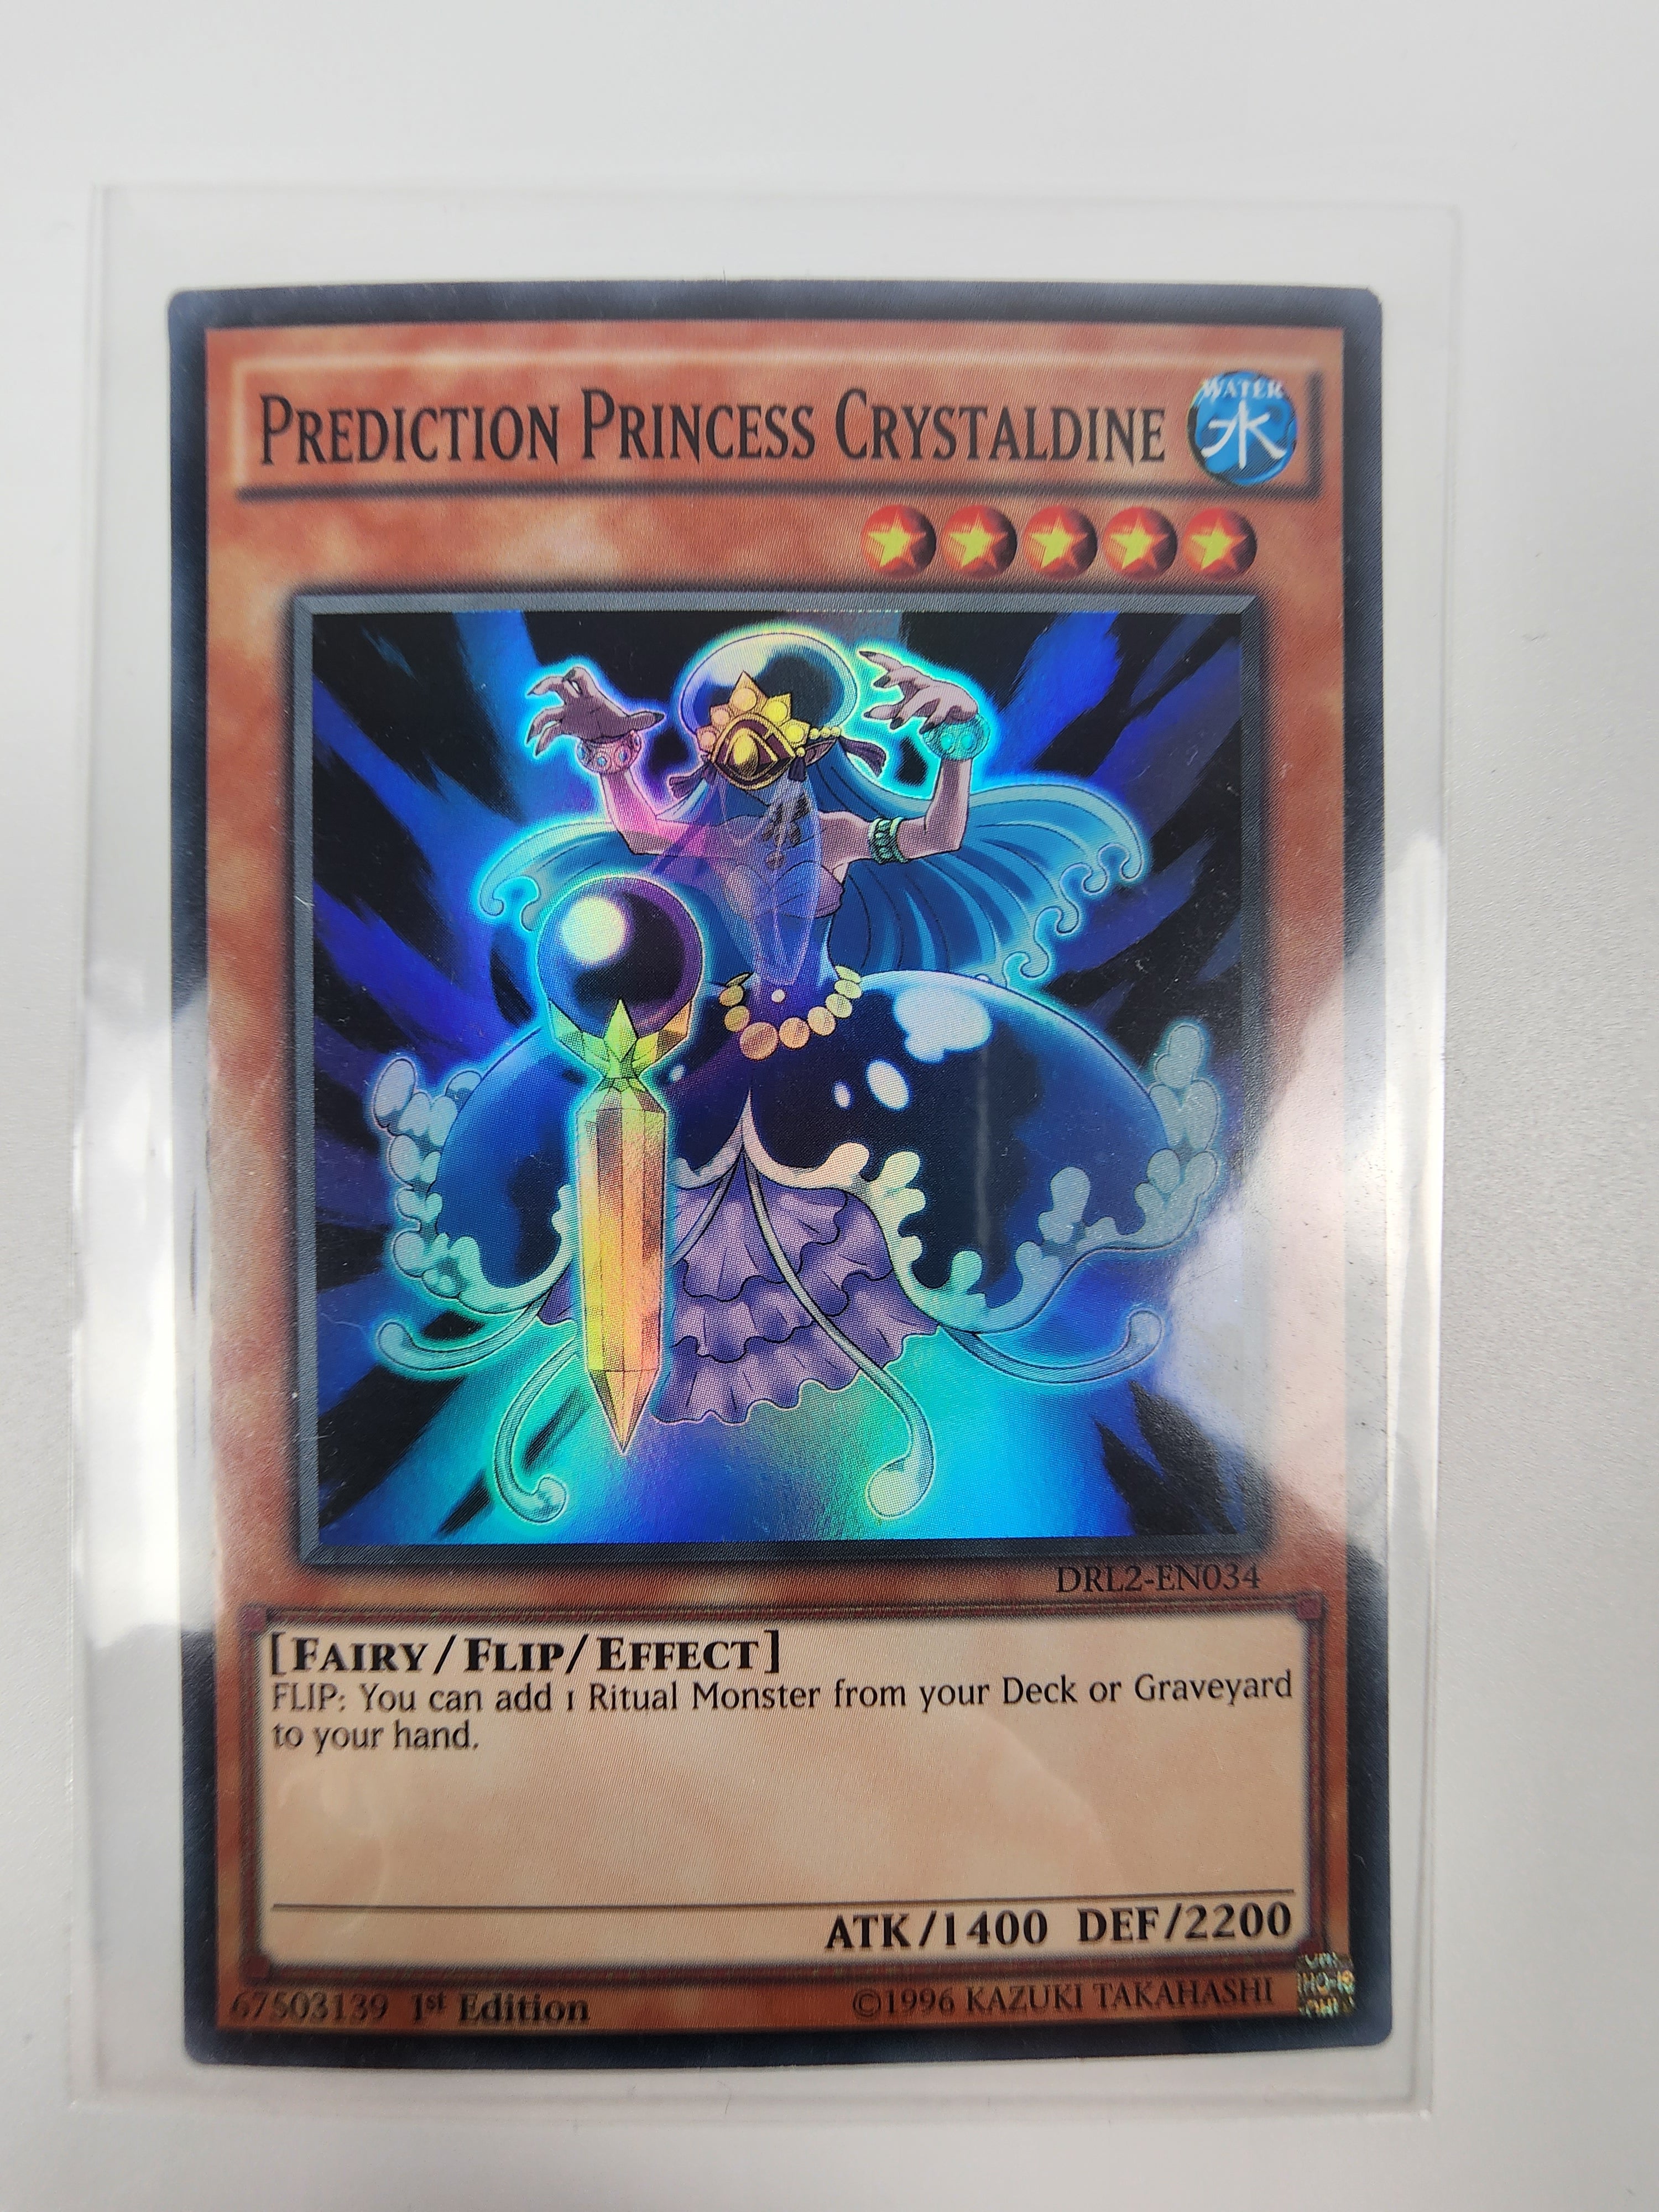 Prediction Princess Crystaldine - DRL2-EN034 Yugioh Card